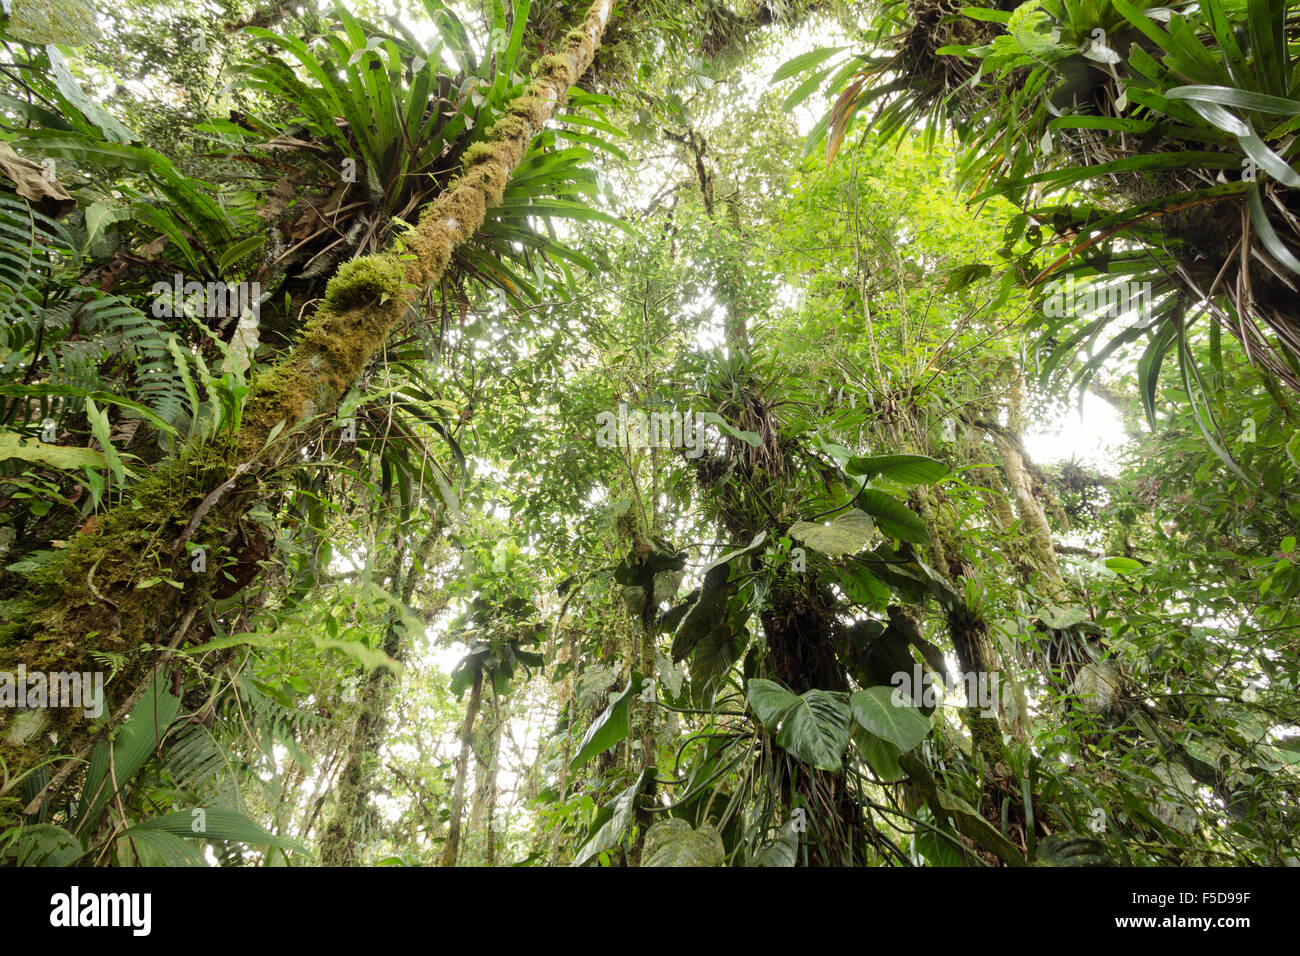 Dans les arbres chargés d'épiphytes cloudforest humide à 2 200 m d'altitude sur le versant amazonien de la Cordillère des Andes en Equateur Banque D'Images